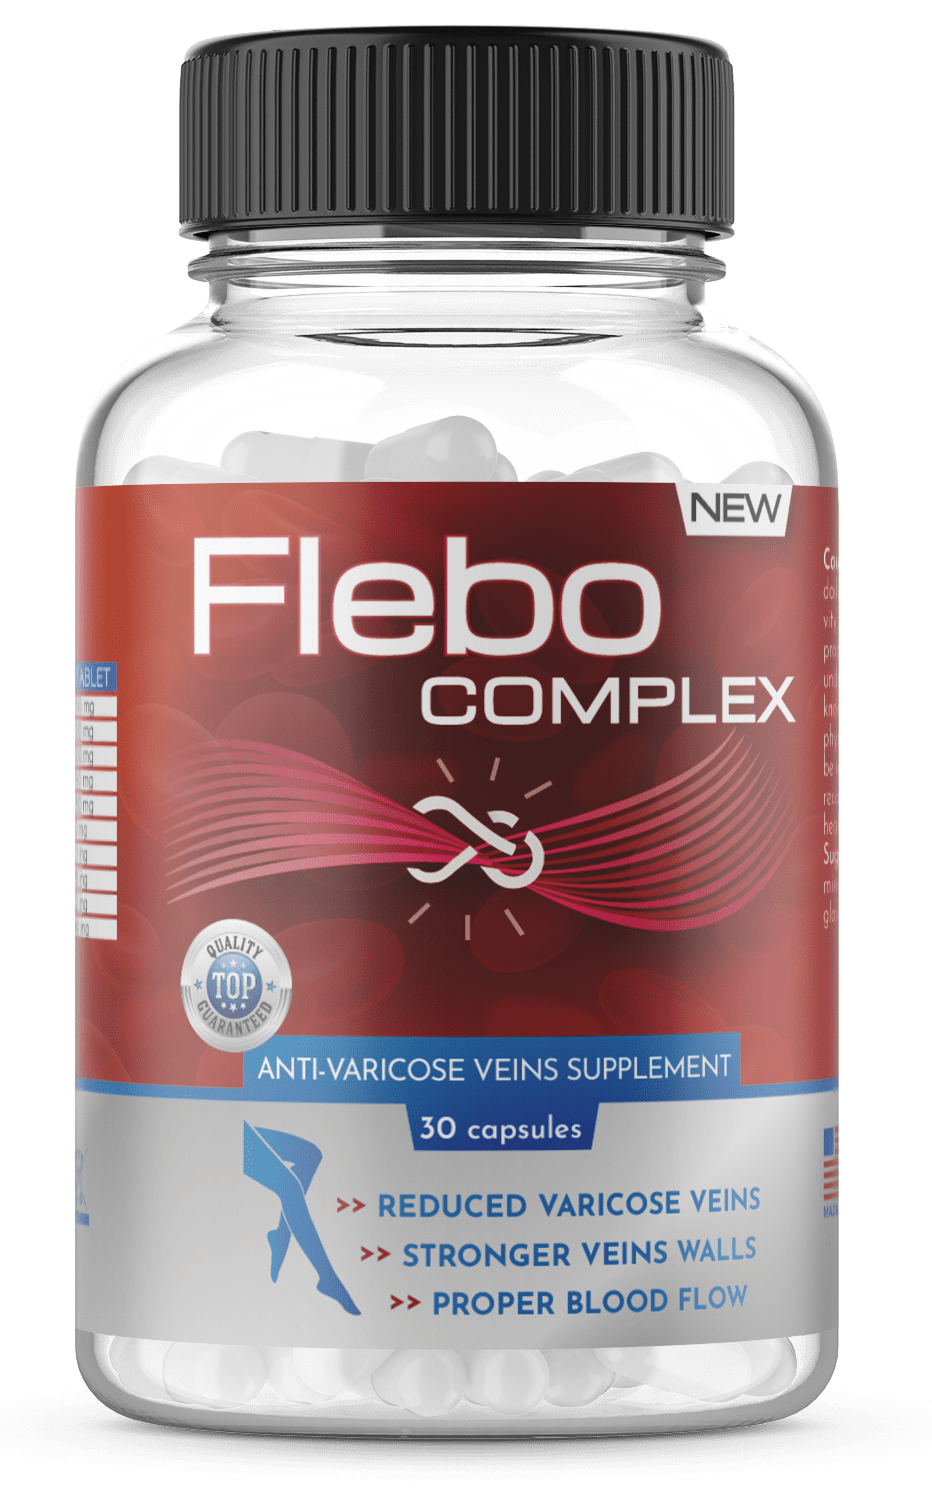 Flebo Complex - 2020 - skład, gdzie kupić, ceny?